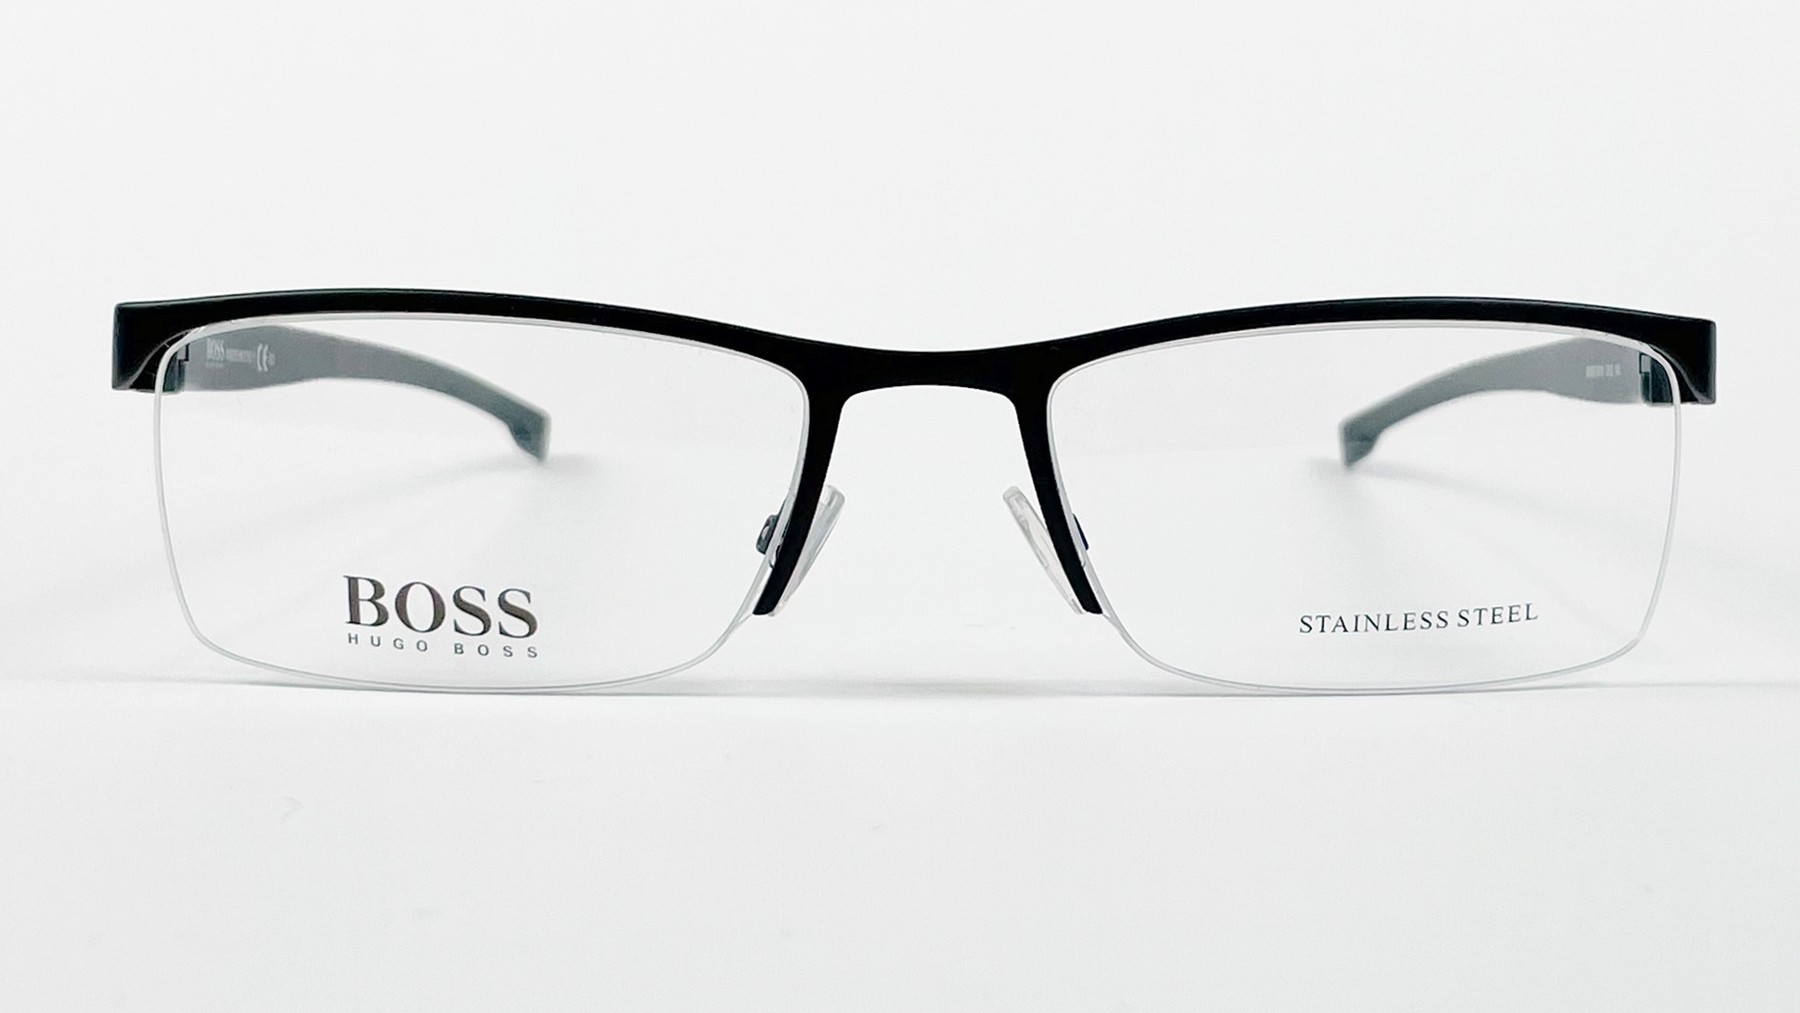 HUGO BOSS 0878 QUS, Korean glasses, sunglasses, eyeglasses, glasses